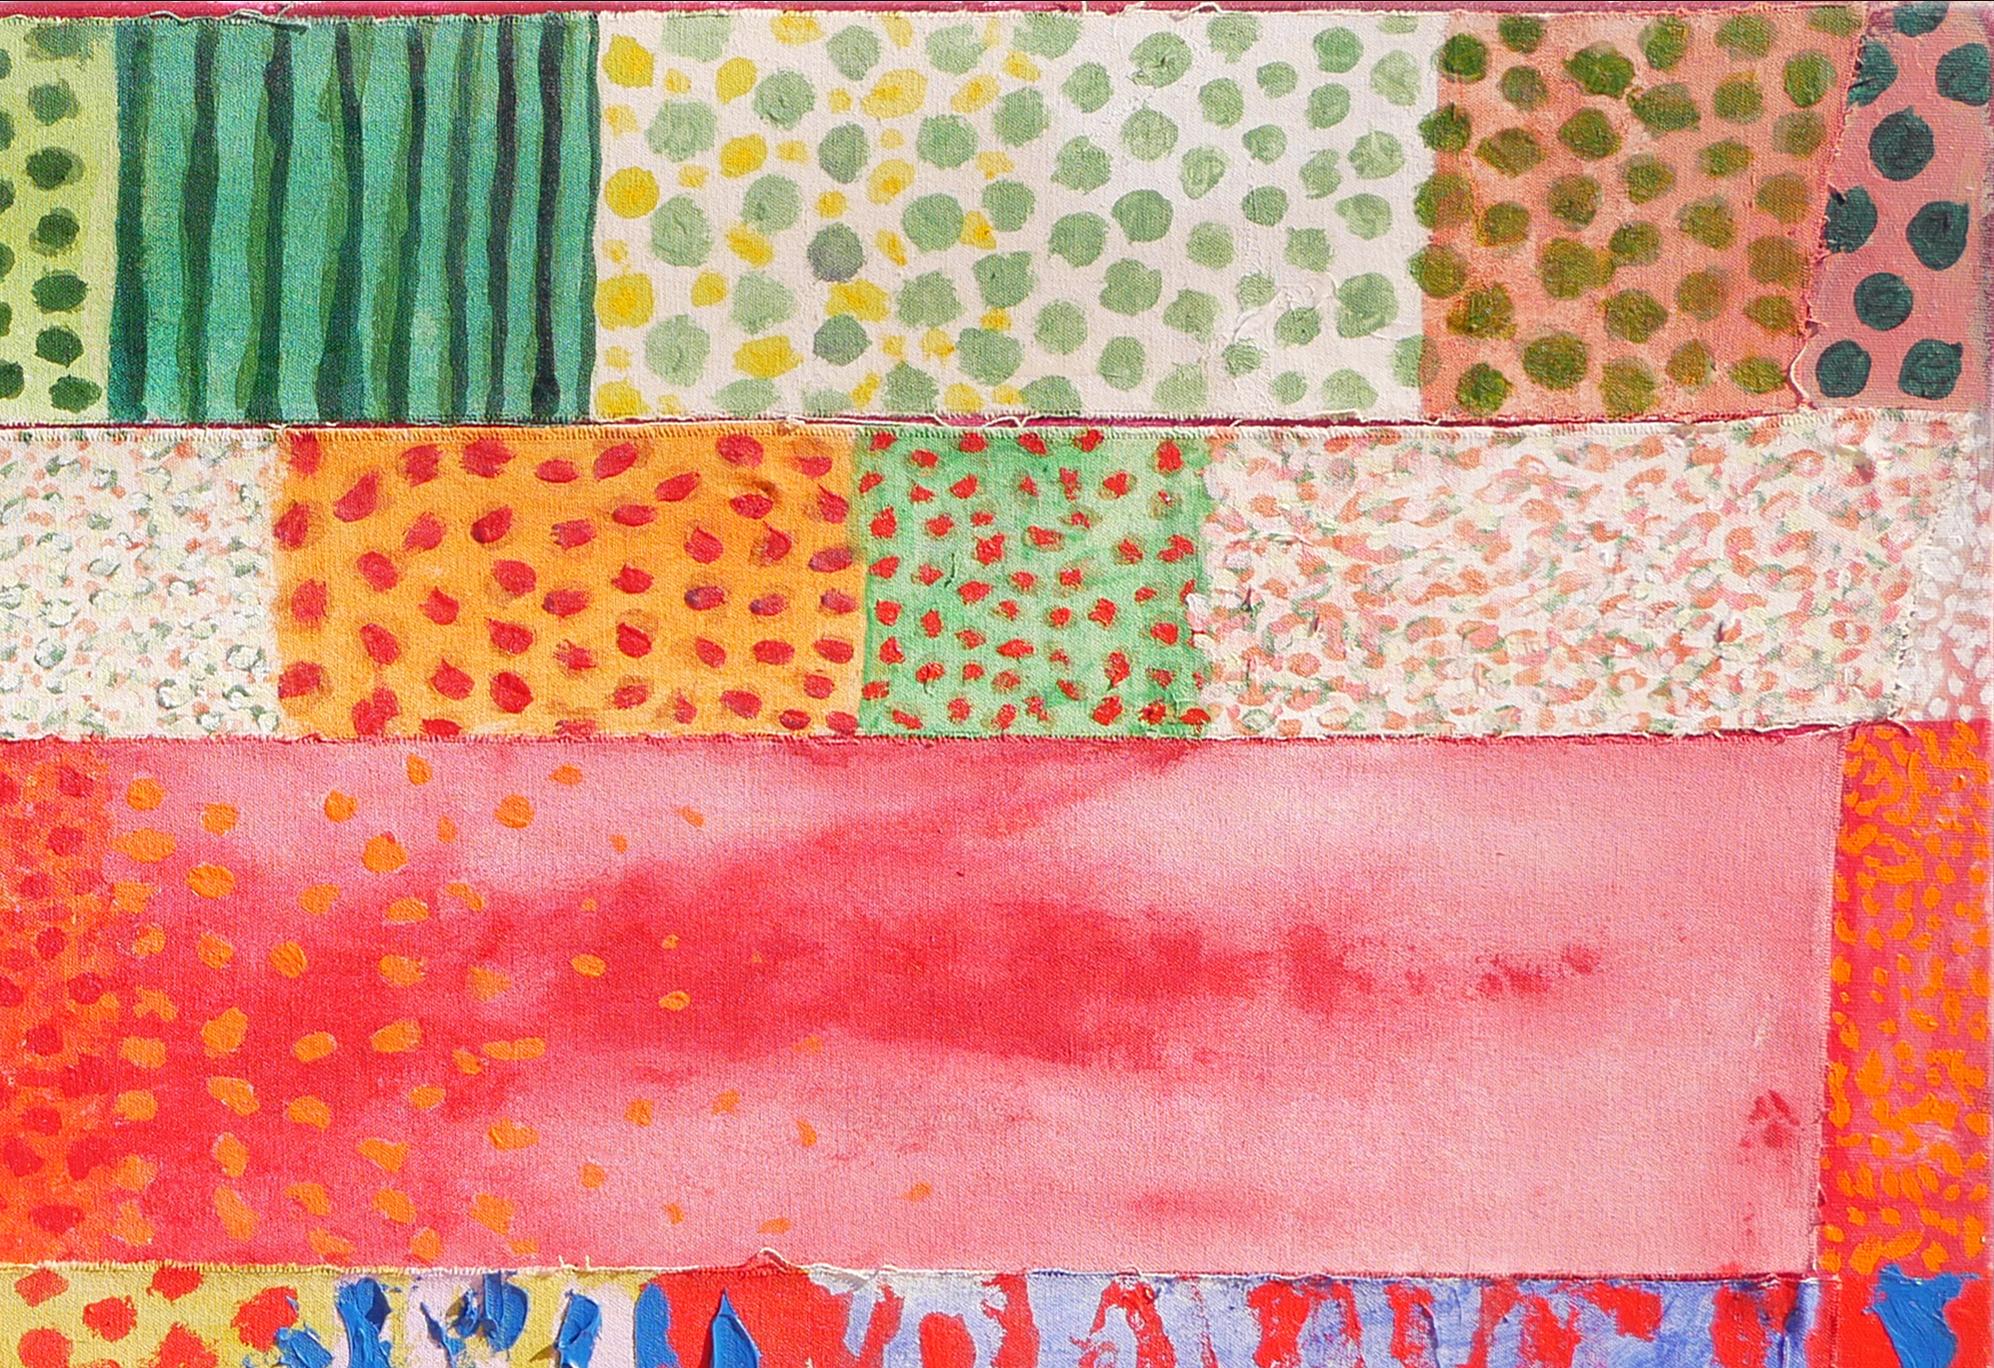 Rot, orange, rosa, grün, gelb und lila geometrische abstrakte Malerei von Houston, TX Künstler Early Staley. Dieses quiltähnliche geometrische Gemälde besteht aus einer Reihe kleiner Leinwände, die mit verschiedenen leuchtenden Farben und Mustern